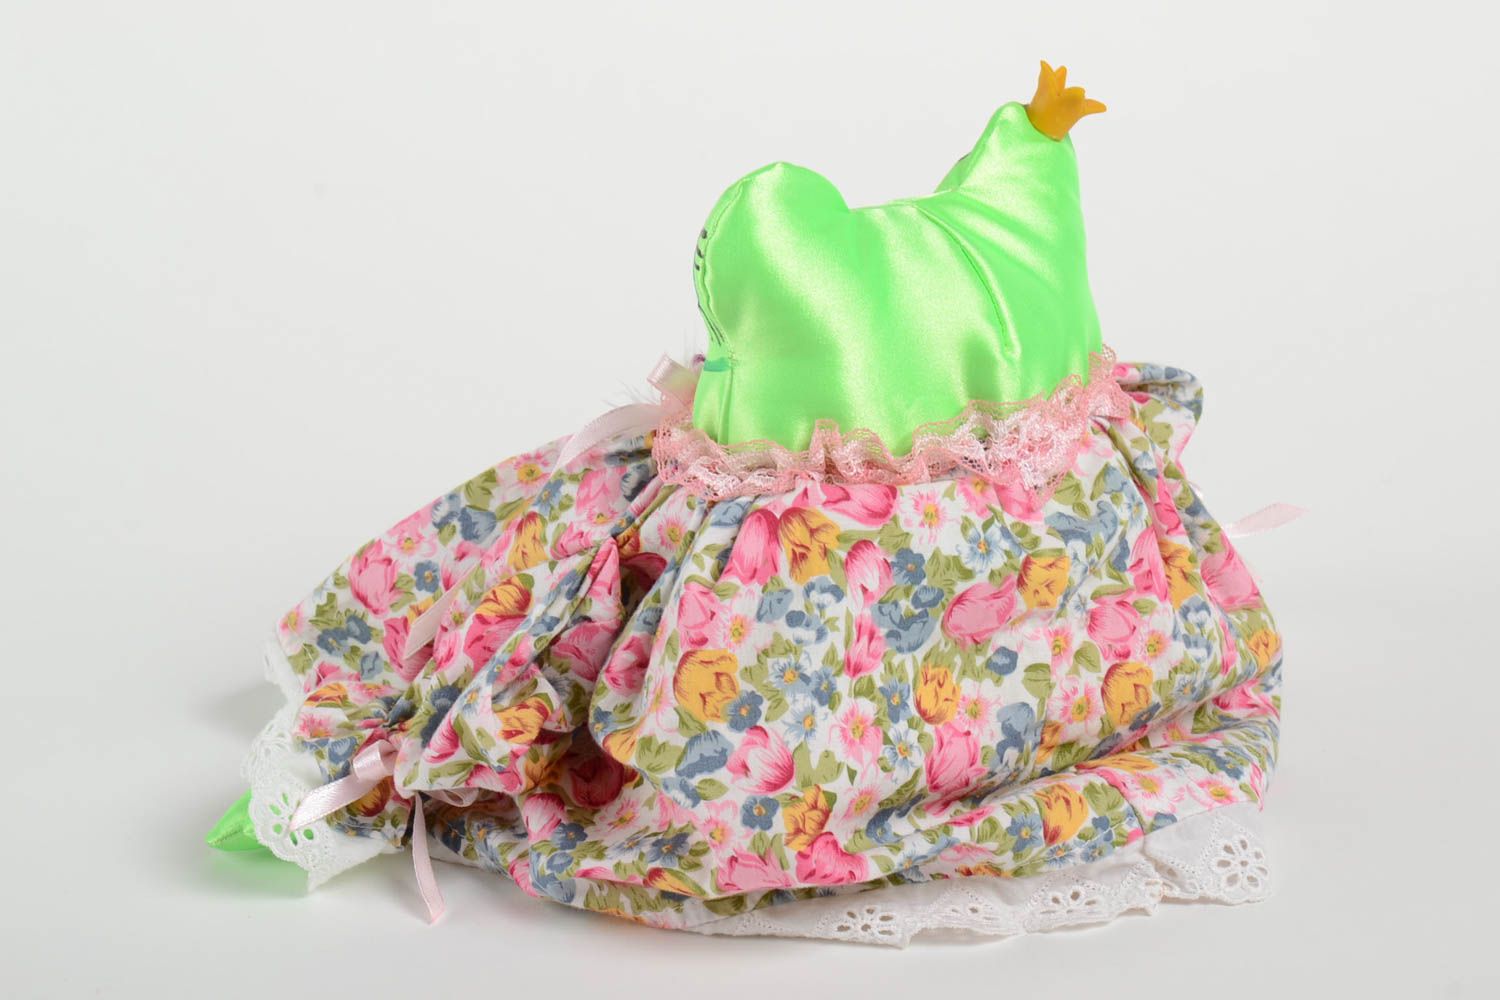 Игрушка лягушка мягкая в платье разноцветная небольшая оригинальная хэнд мейд фото 4